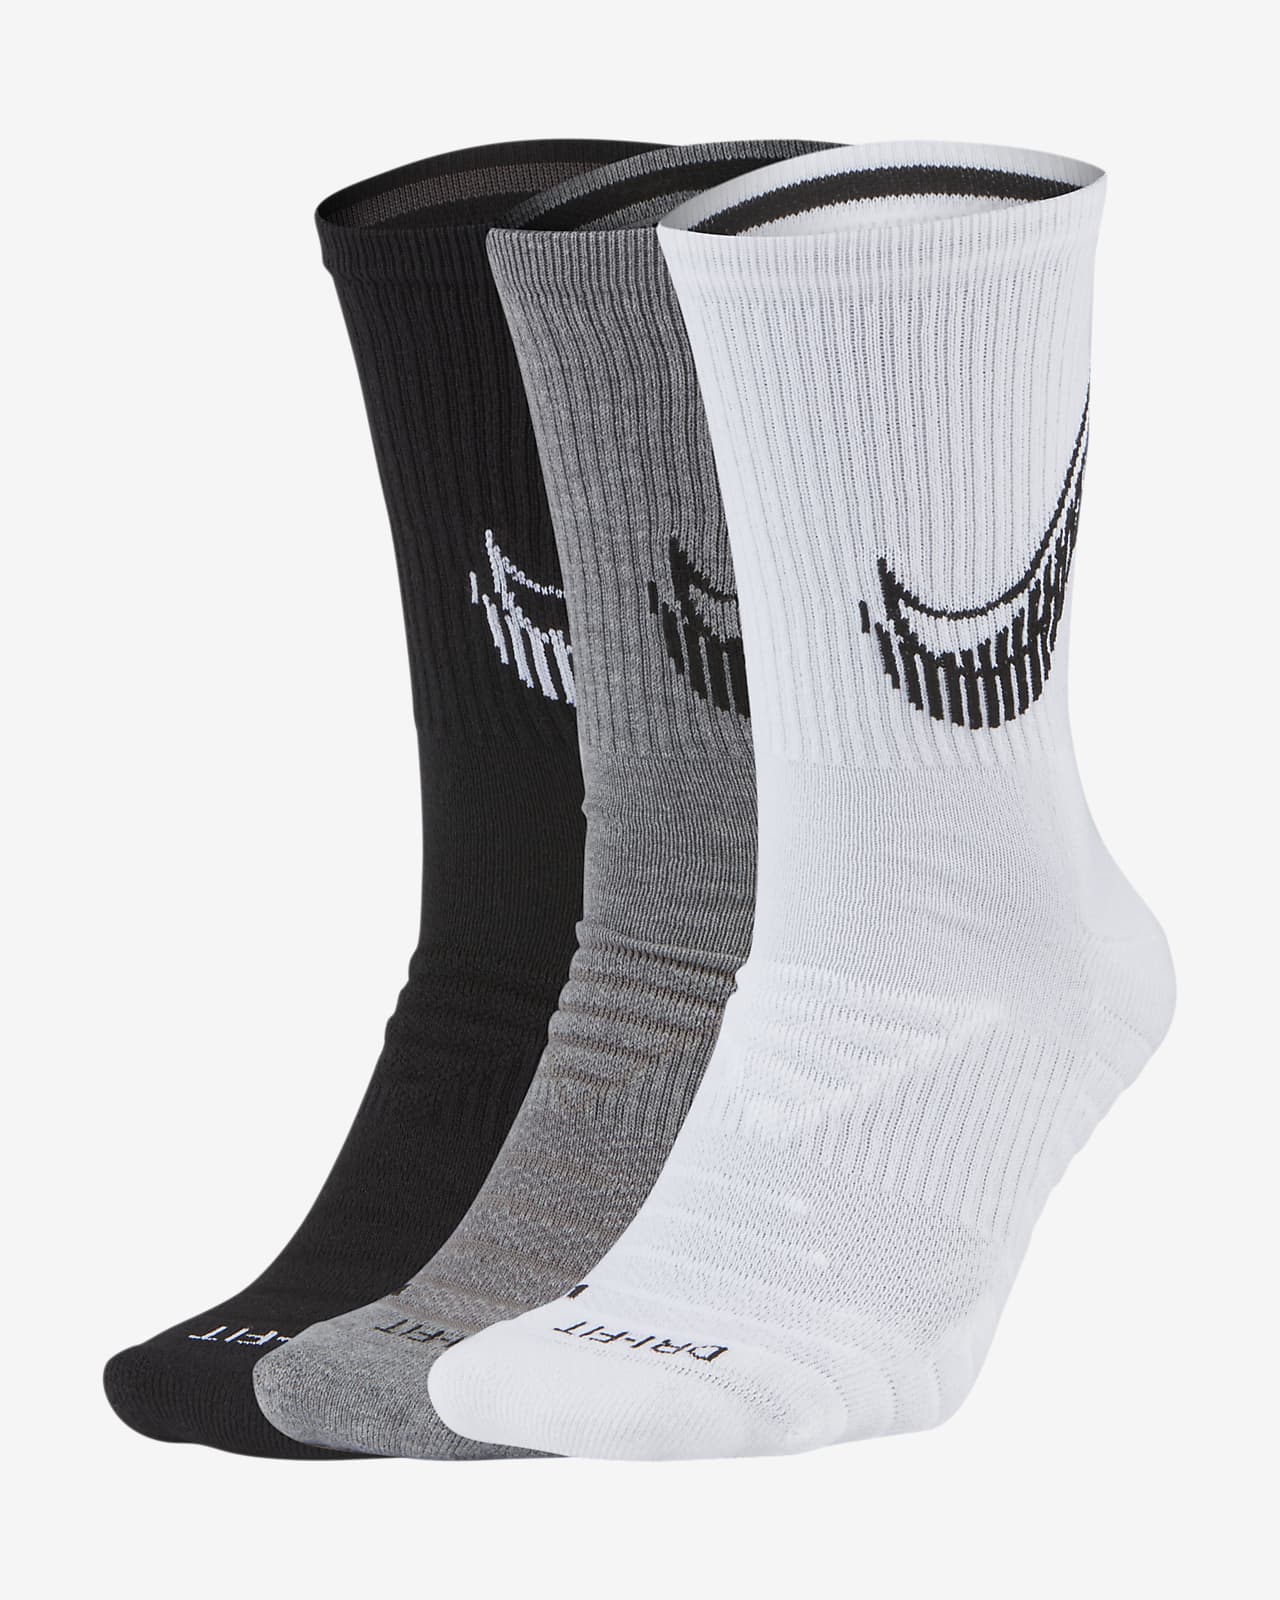 Encadenar becerro Moderador Nike Everyday Max Cushioned Training Crew Socks (3 Pairs). Nike.com